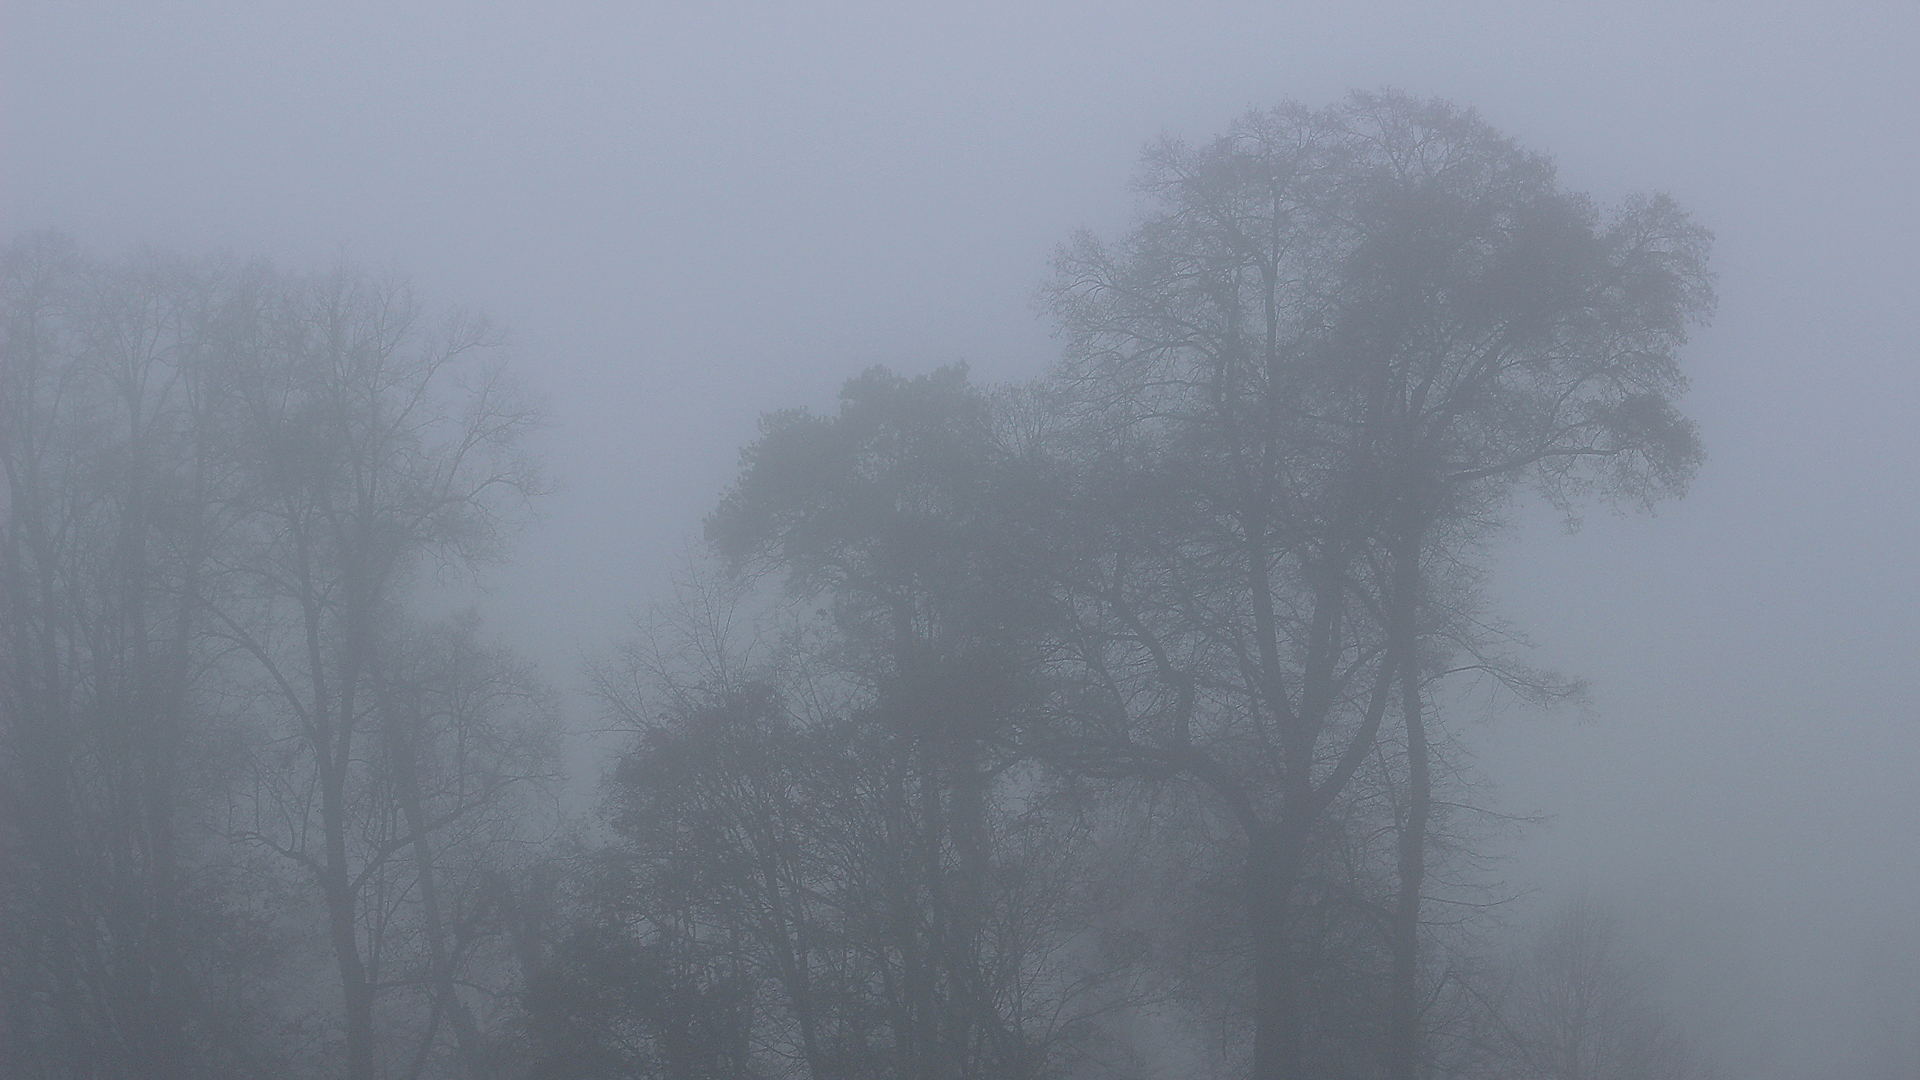 Fotostrecke Nebel Abbildung 18